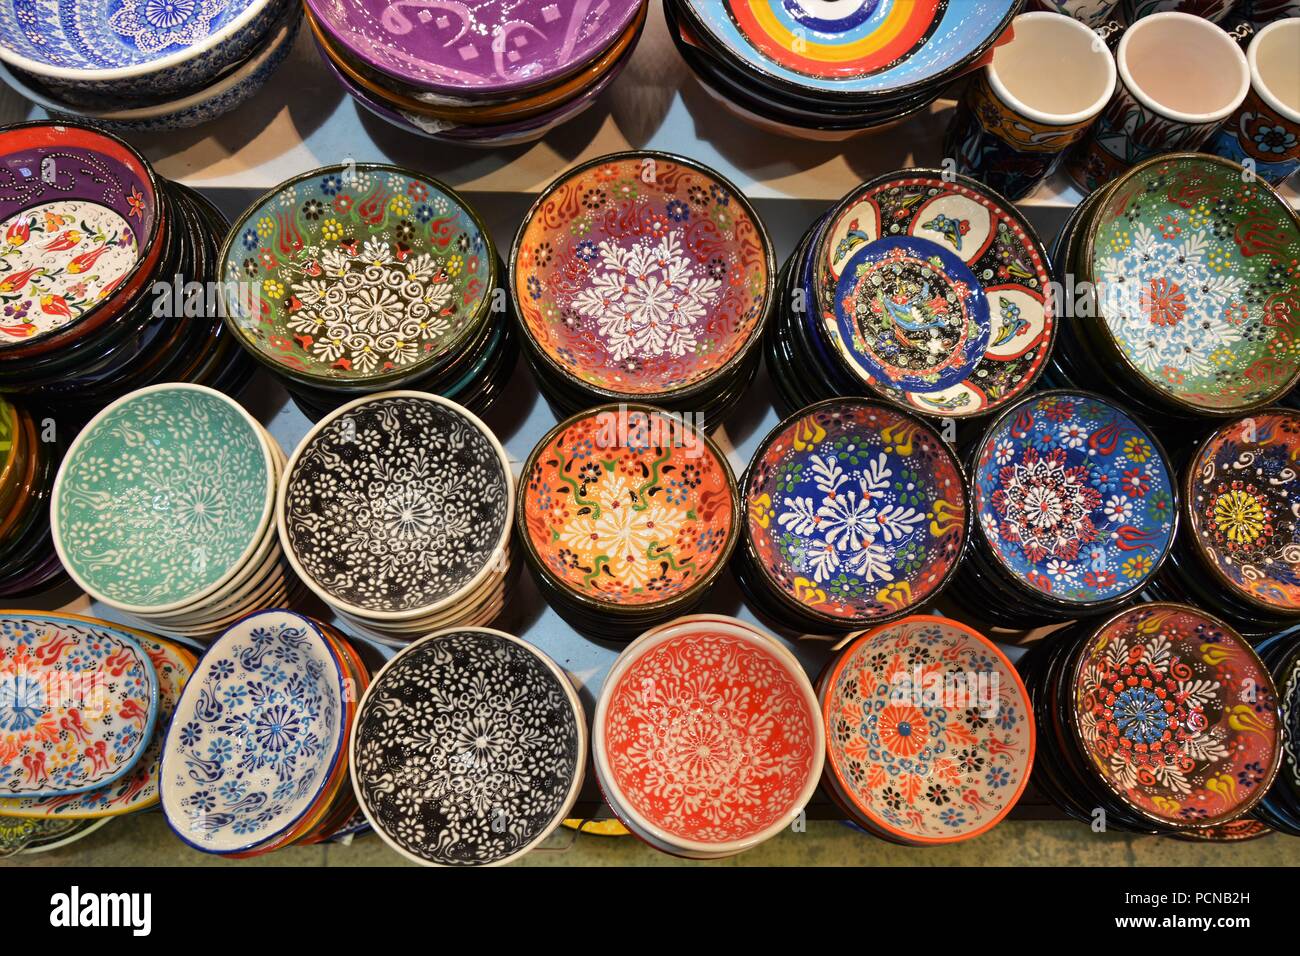 Traditionelle türkische Keramik Teller und Schalen im Grand Basar  Stockfotografie - Alamy